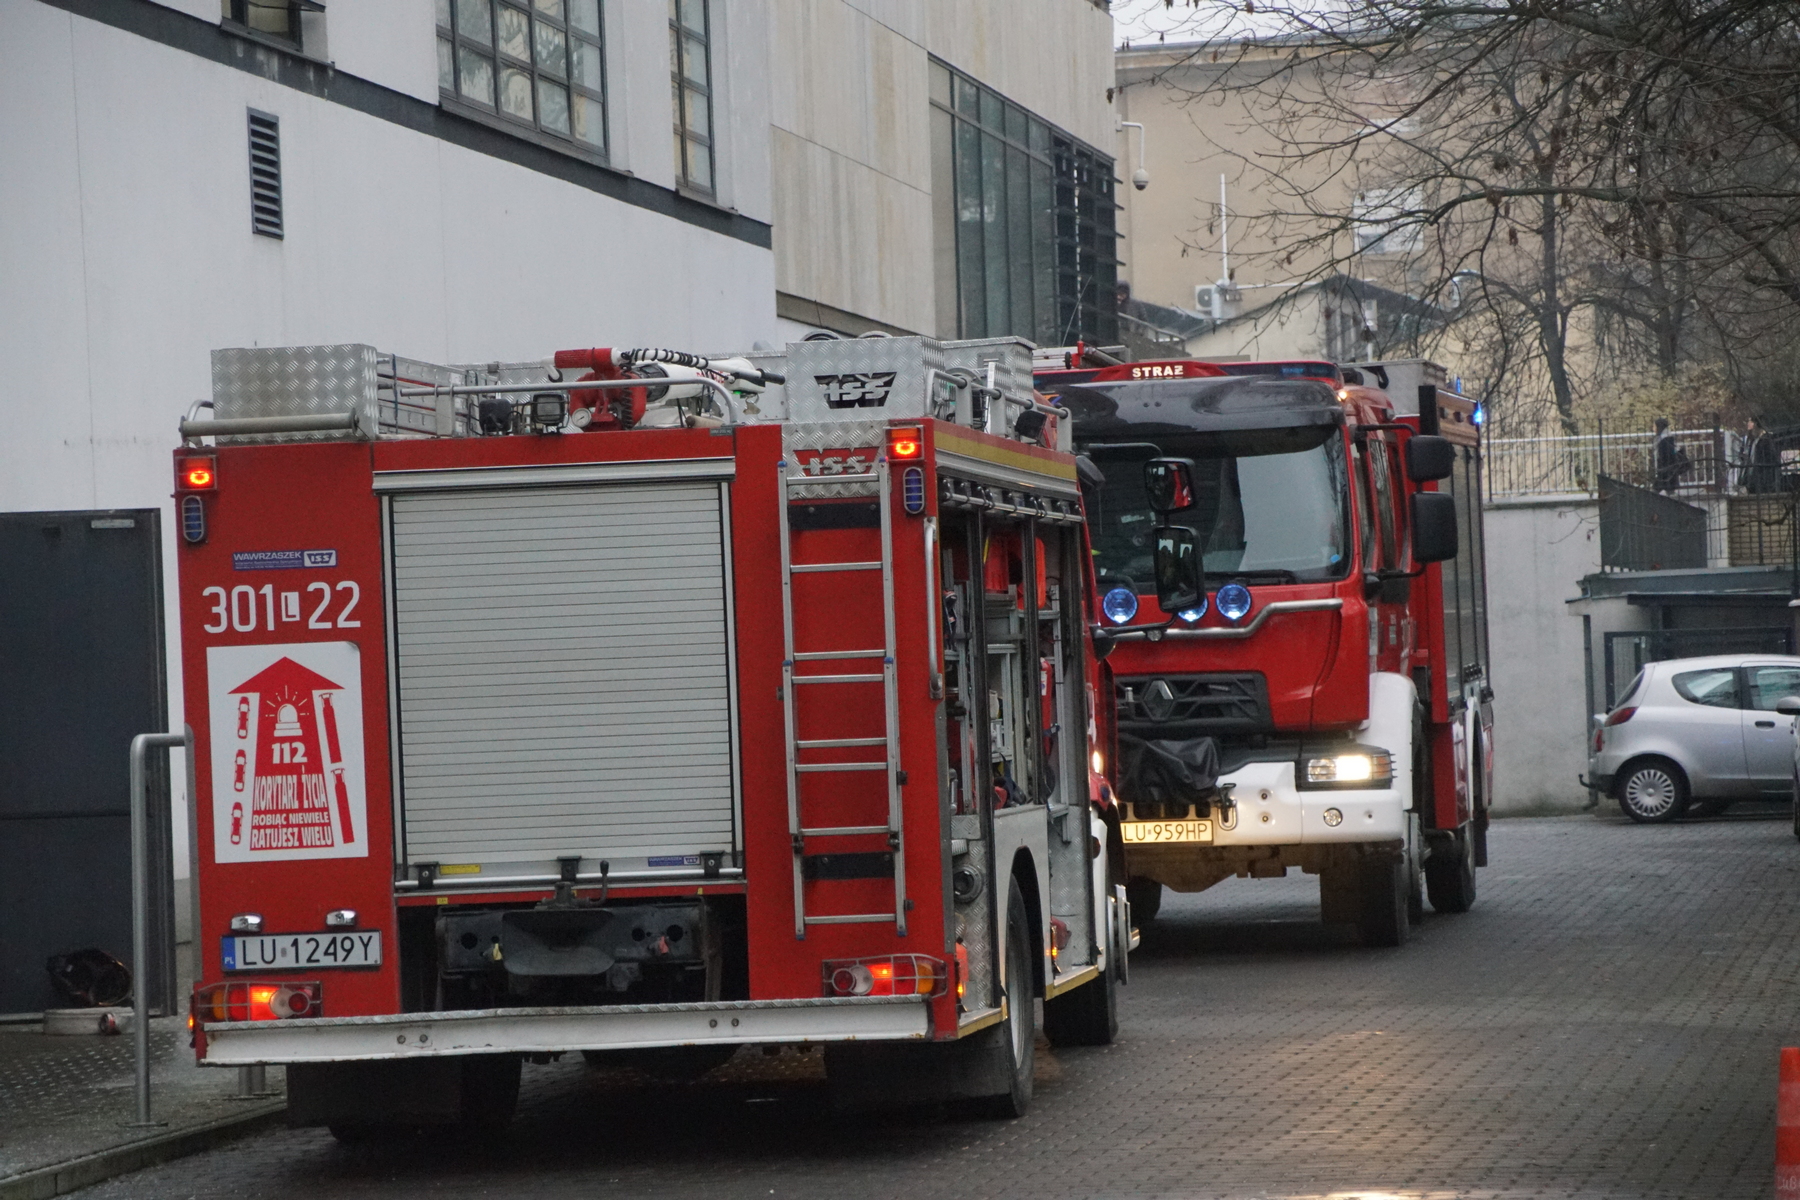 Około 200 osób ewakuowanych z centrum handlowego, na miejscu działało 5 zastępów straży pożarnej (zdjęcia)